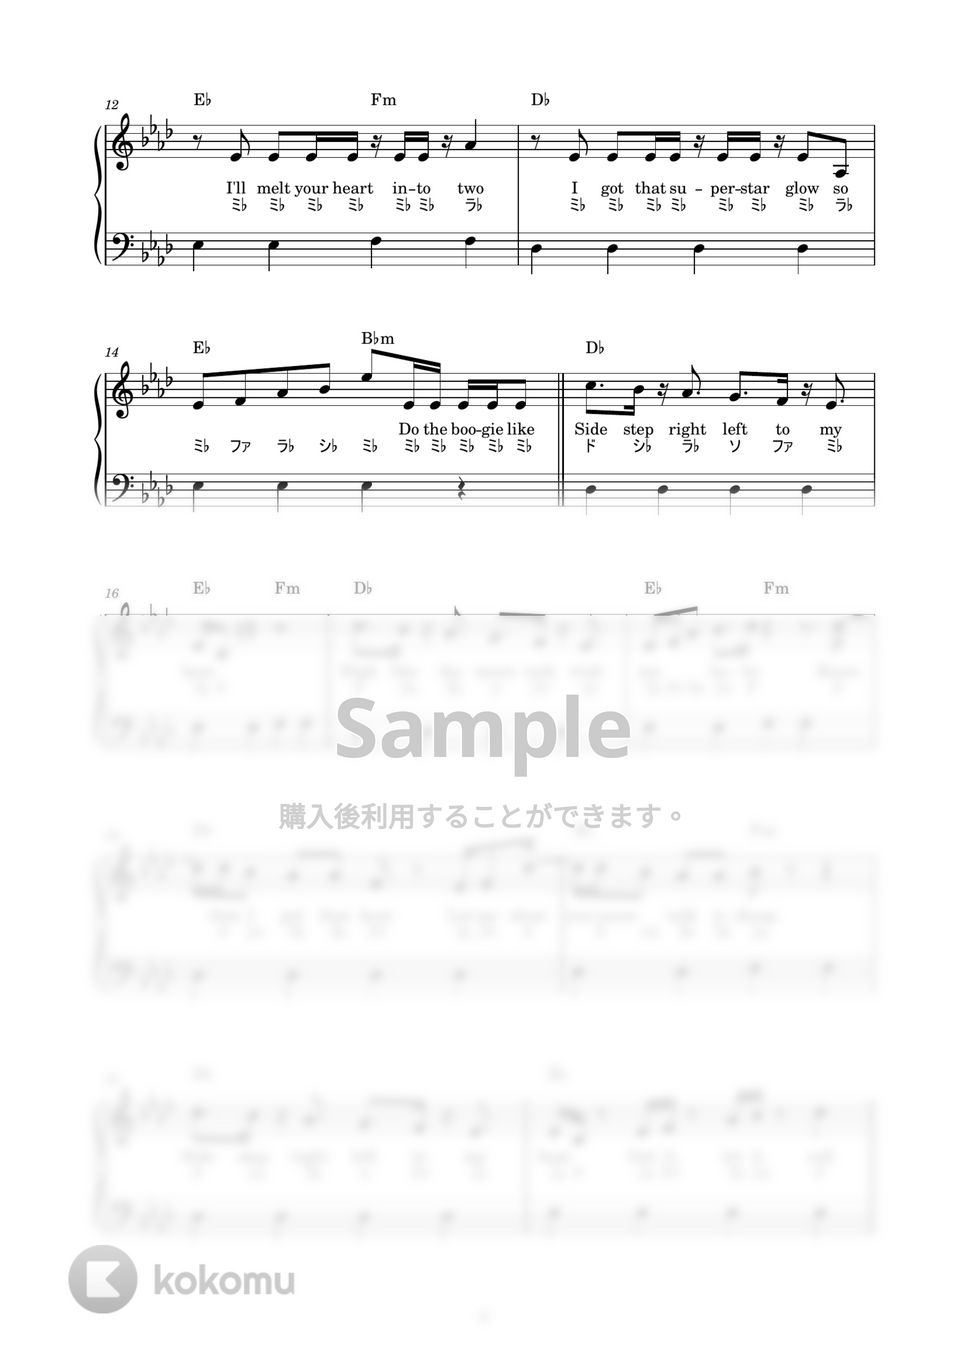 防弾少年団(BTS) - Butter (かんたん / 歌詞付き / ドレミ付き / 初心者) by piano.tokyo